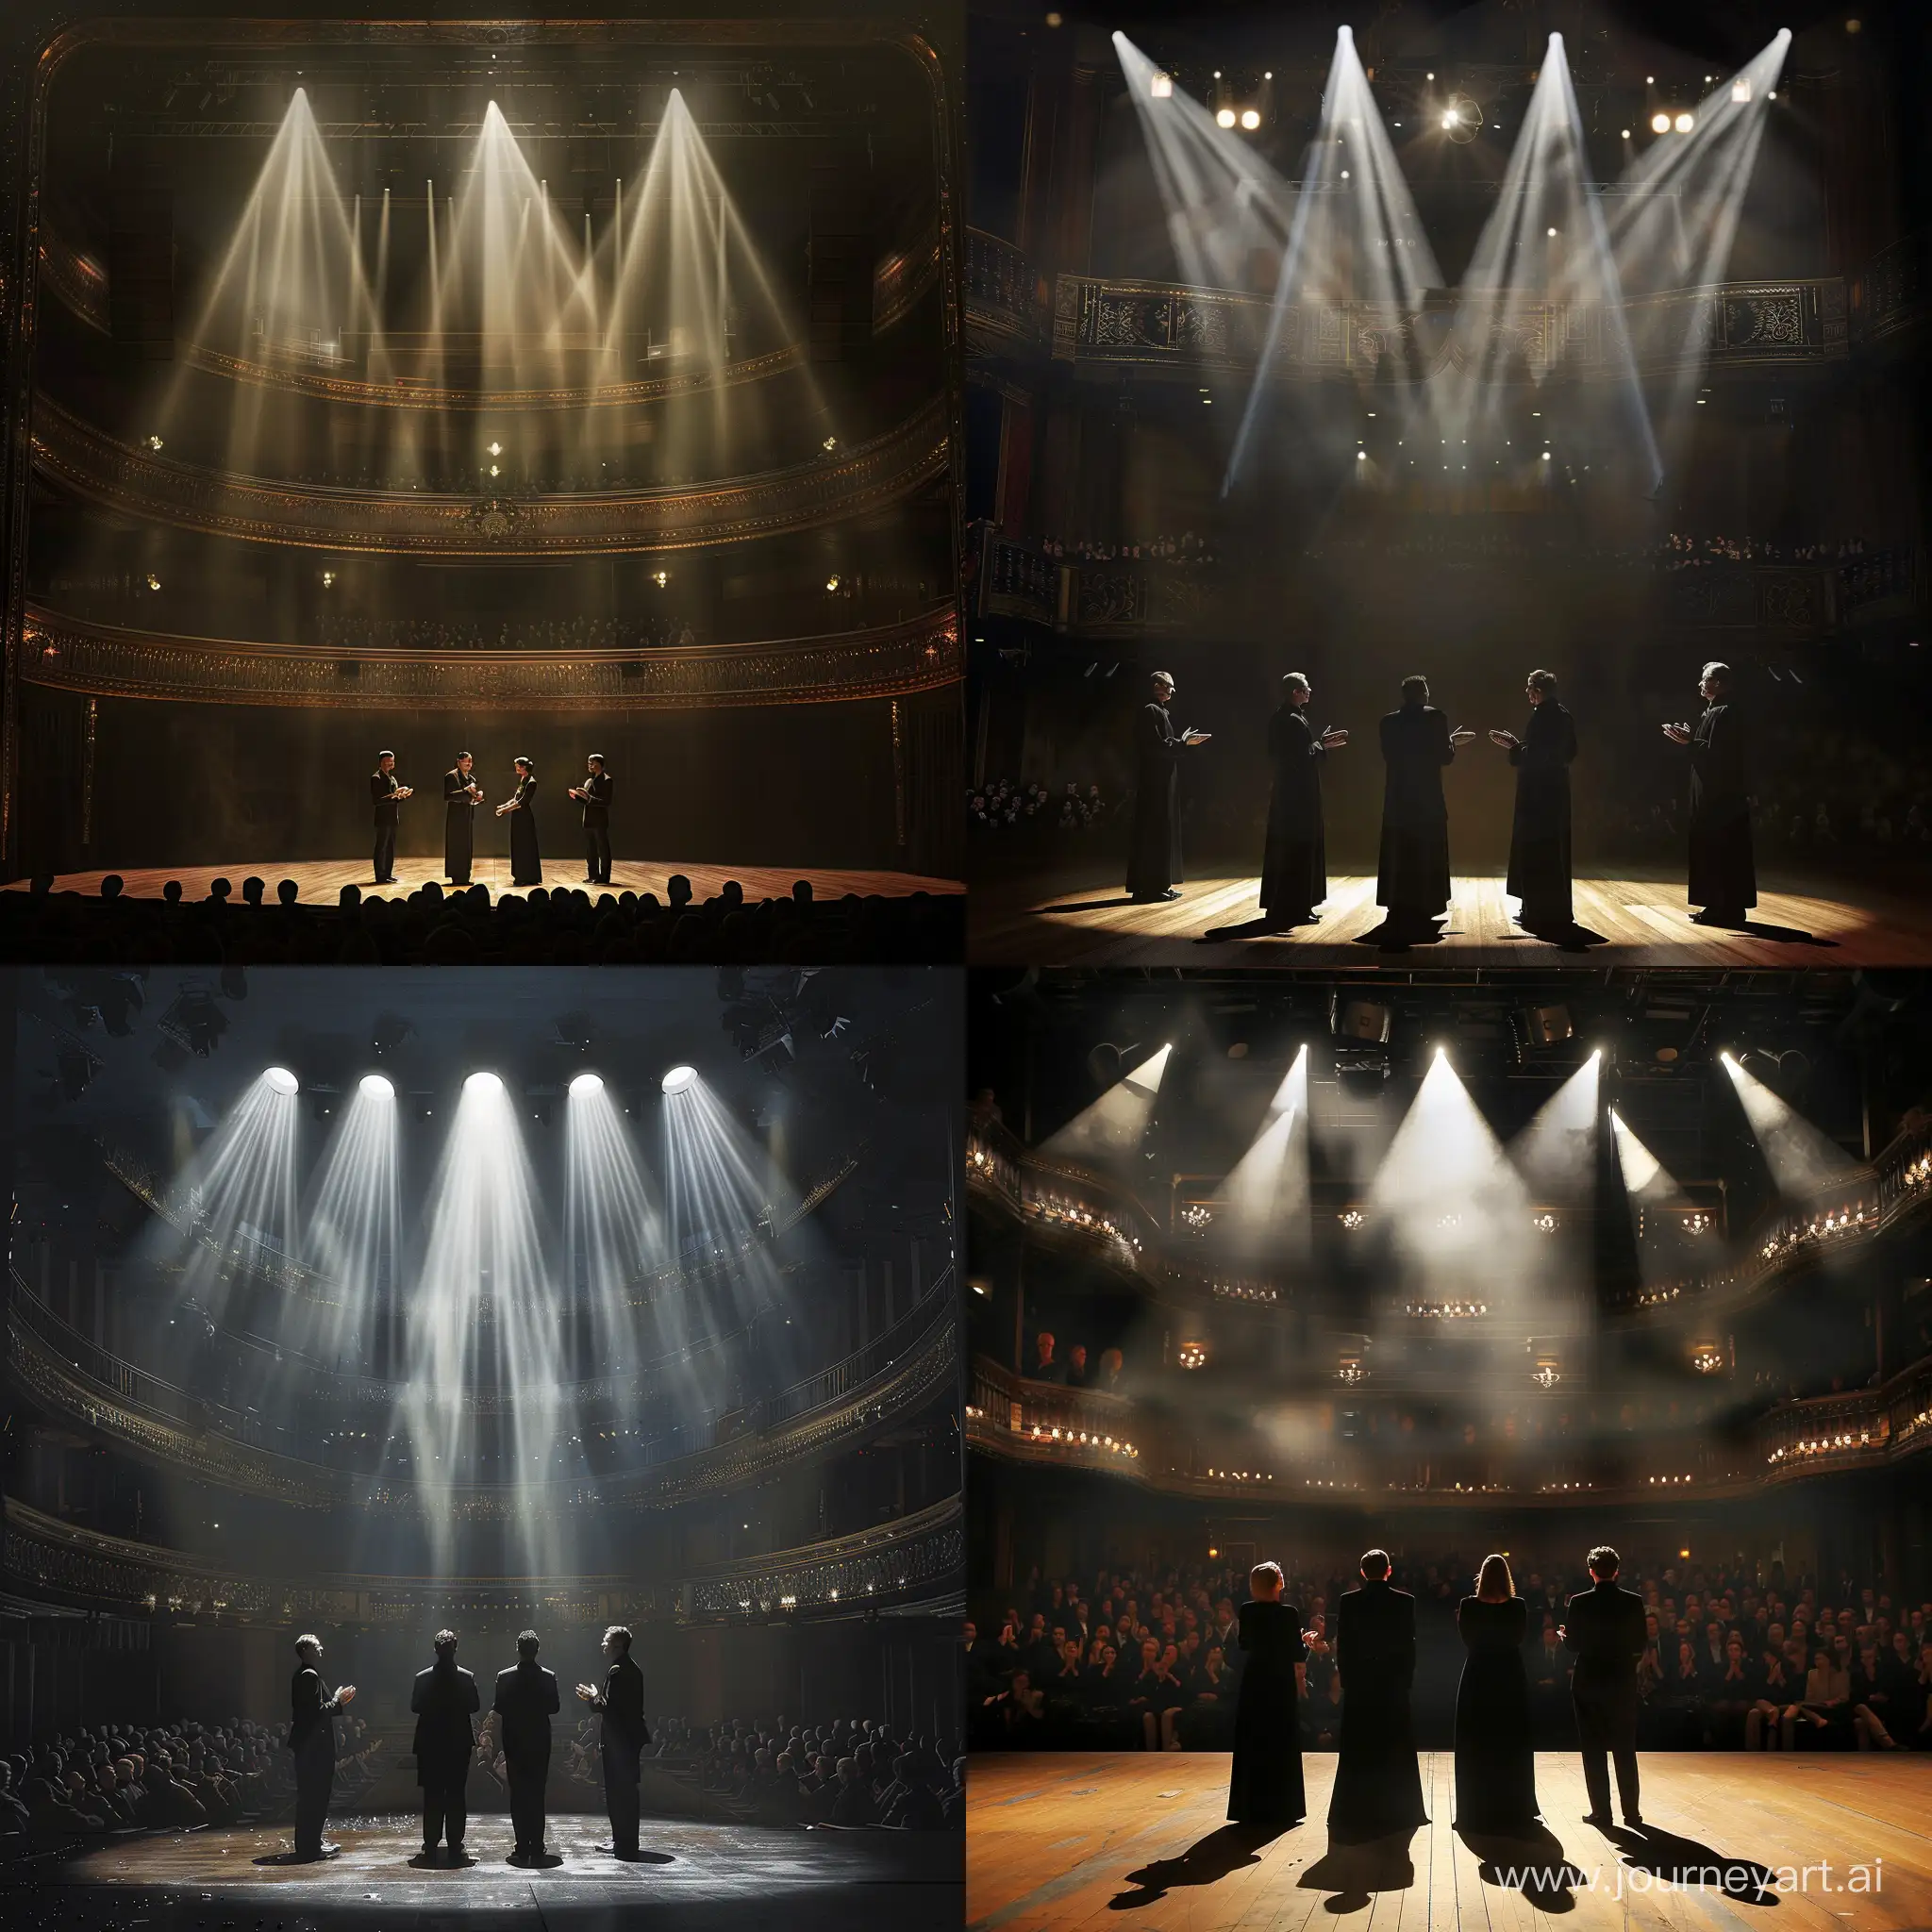 4 актера в черной одежде стоят на сцене большого театра, сцену освещают прожектора, зрители хлопают, арт, реалистичный